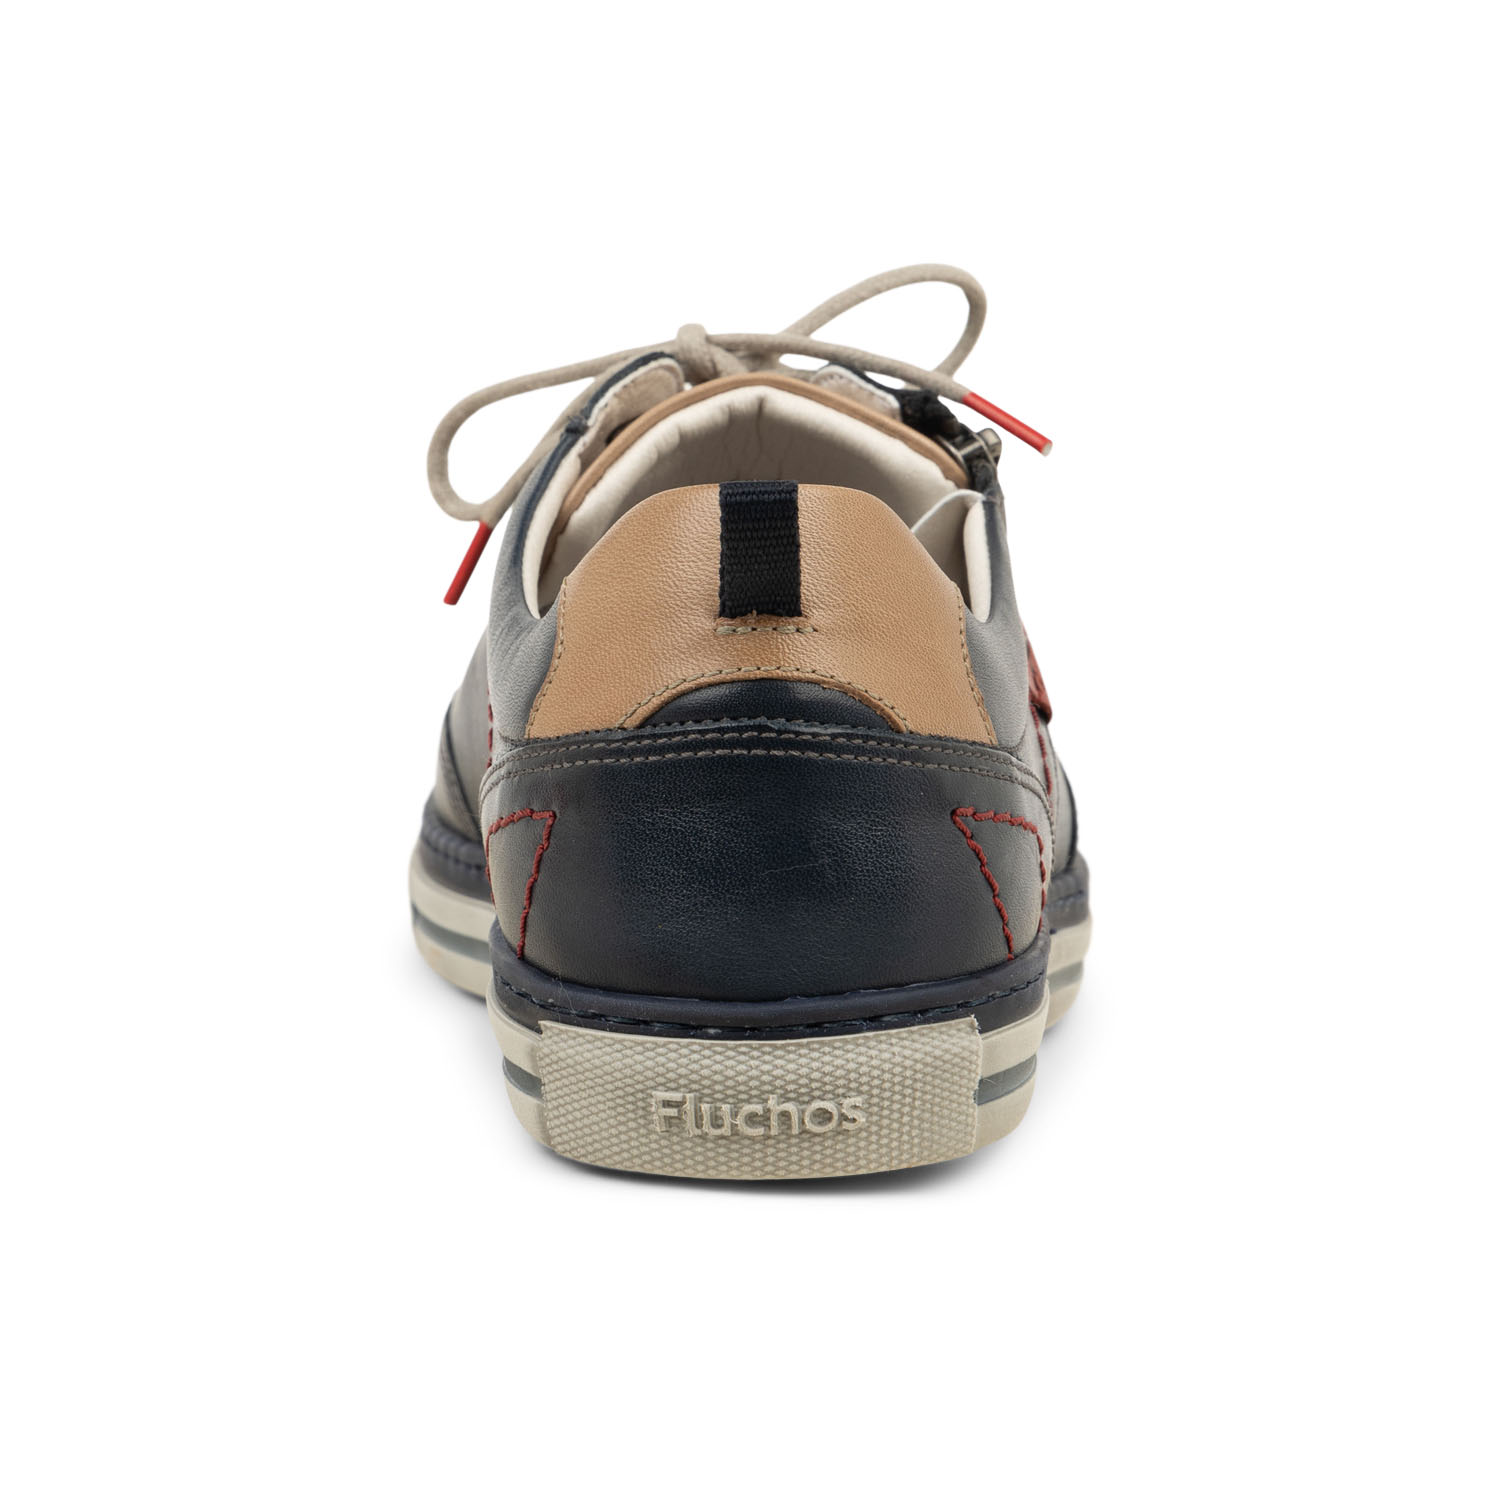 03 - FLUZIP - FLUCHOS - Chaussures à lacets - Cuir